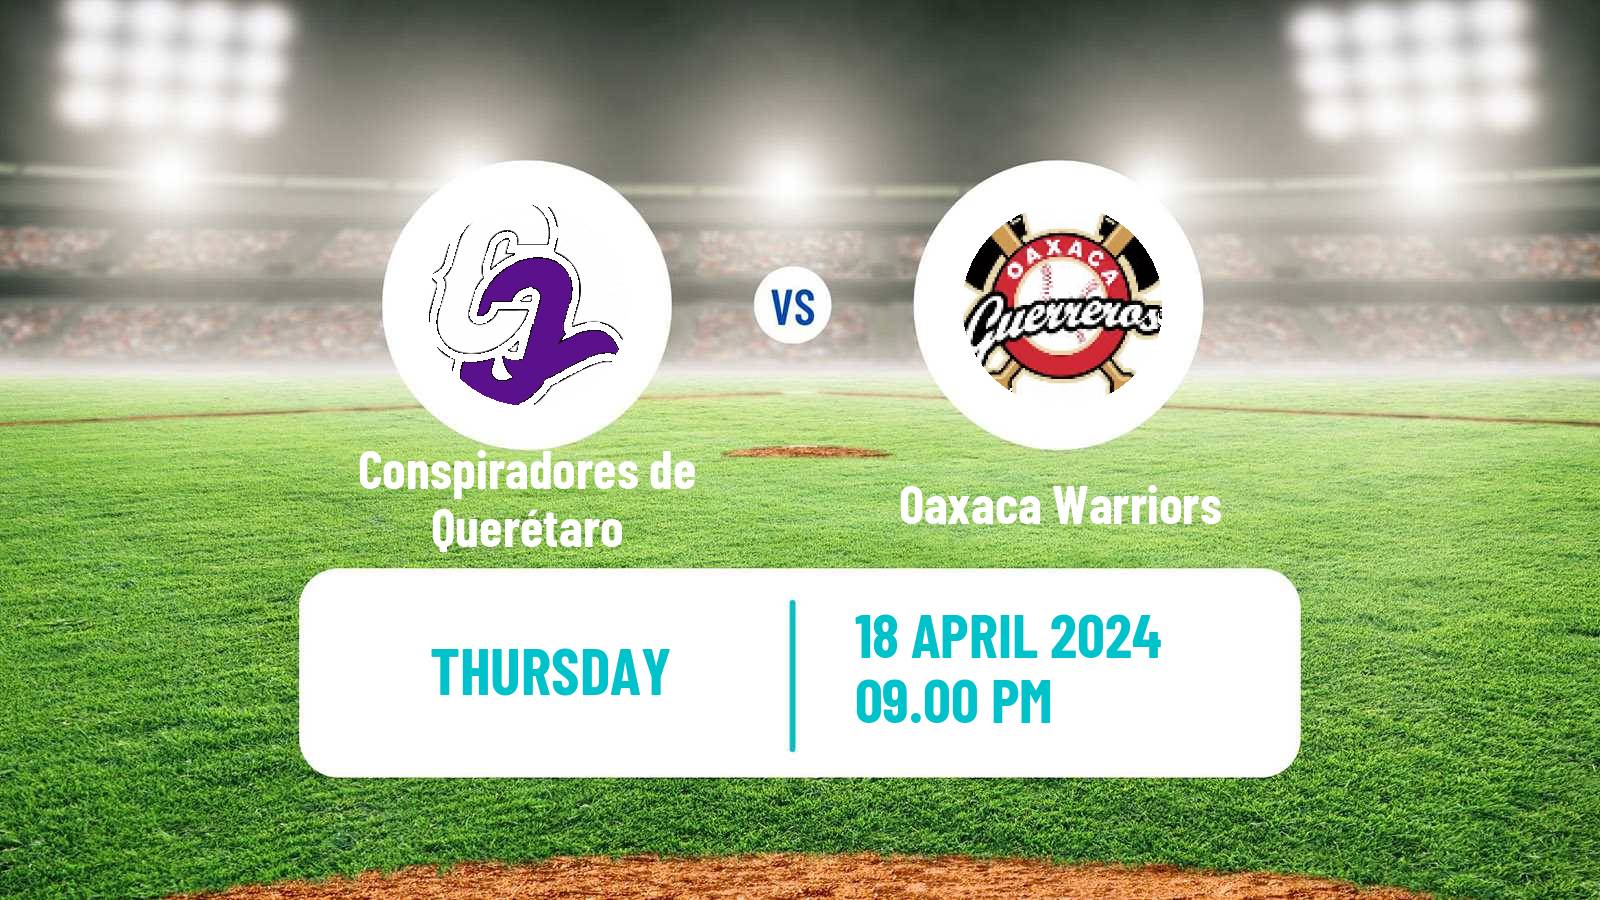 Baseball LMB Conspiradores de Querétaro - Oaxaca Warriors